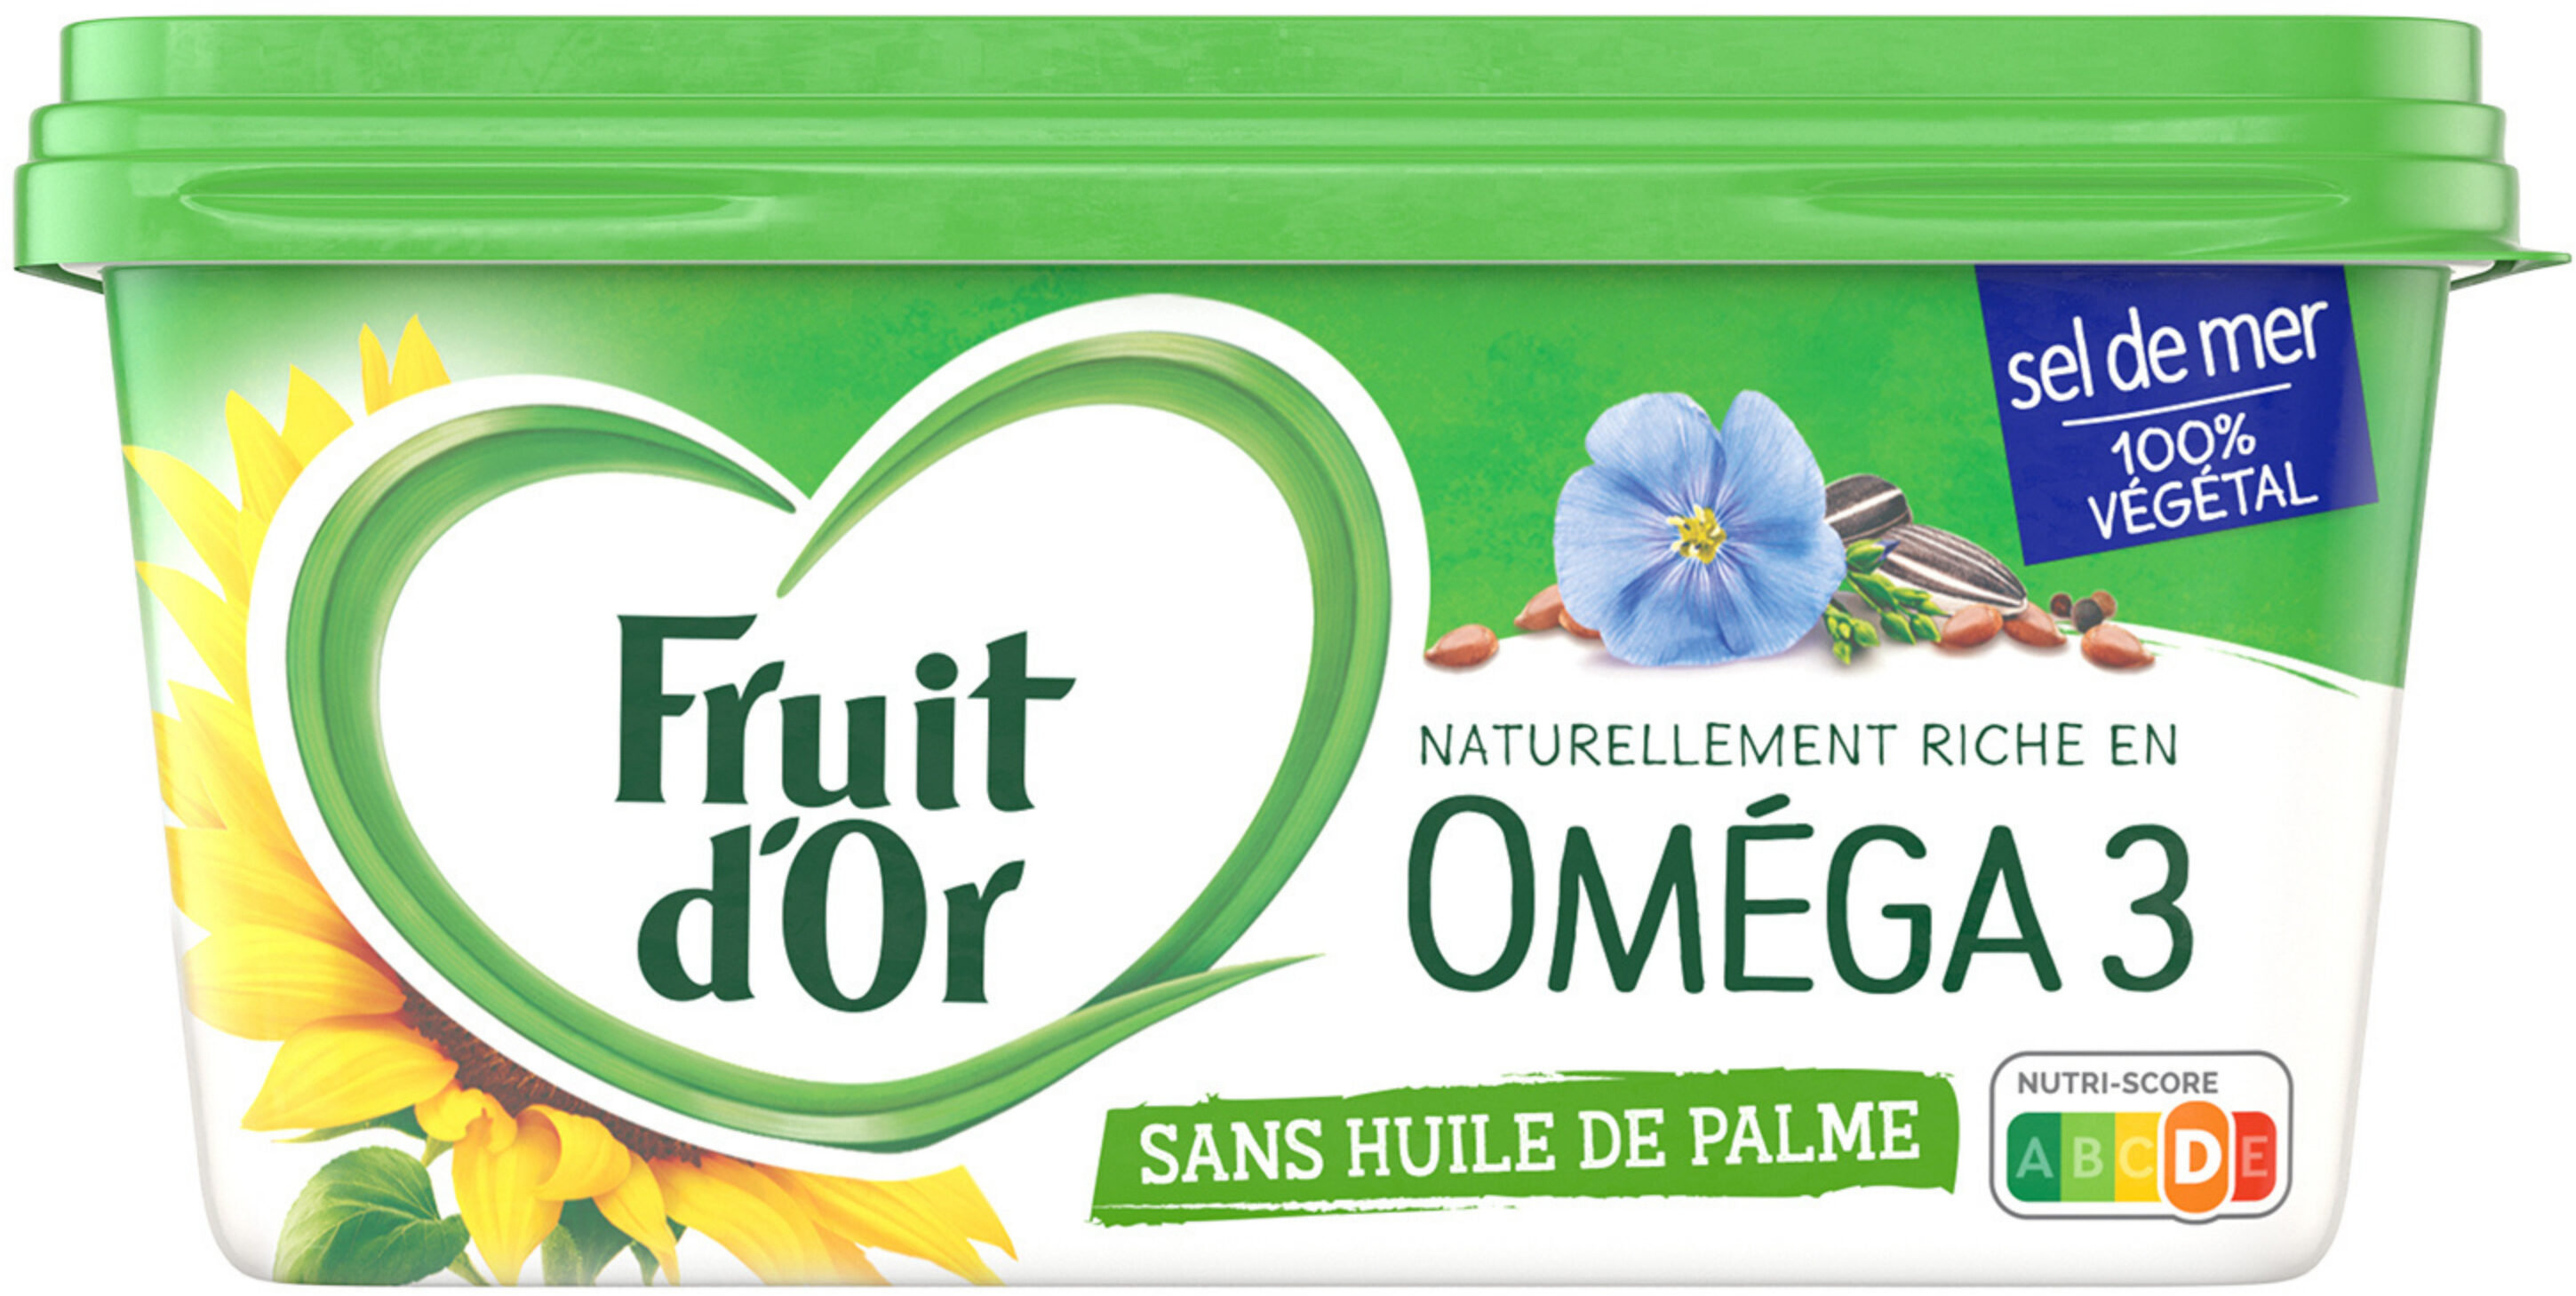 Fruit d'Or Oméga 3 Sel de Mer - Sans huile de palme - Product - fr